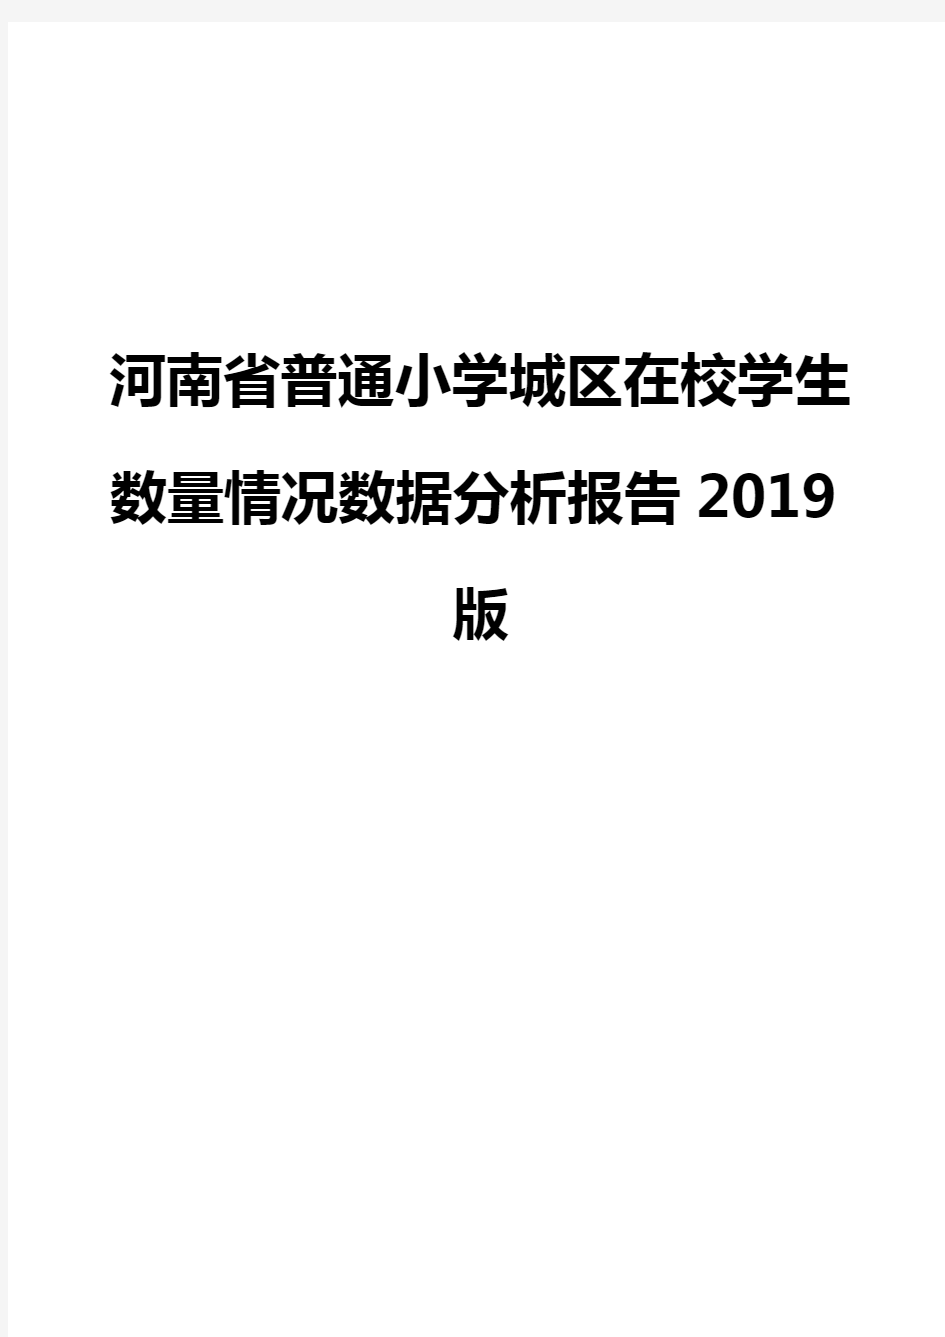 河南省普通小学城区在校学生数量情况数据分析报告2019版